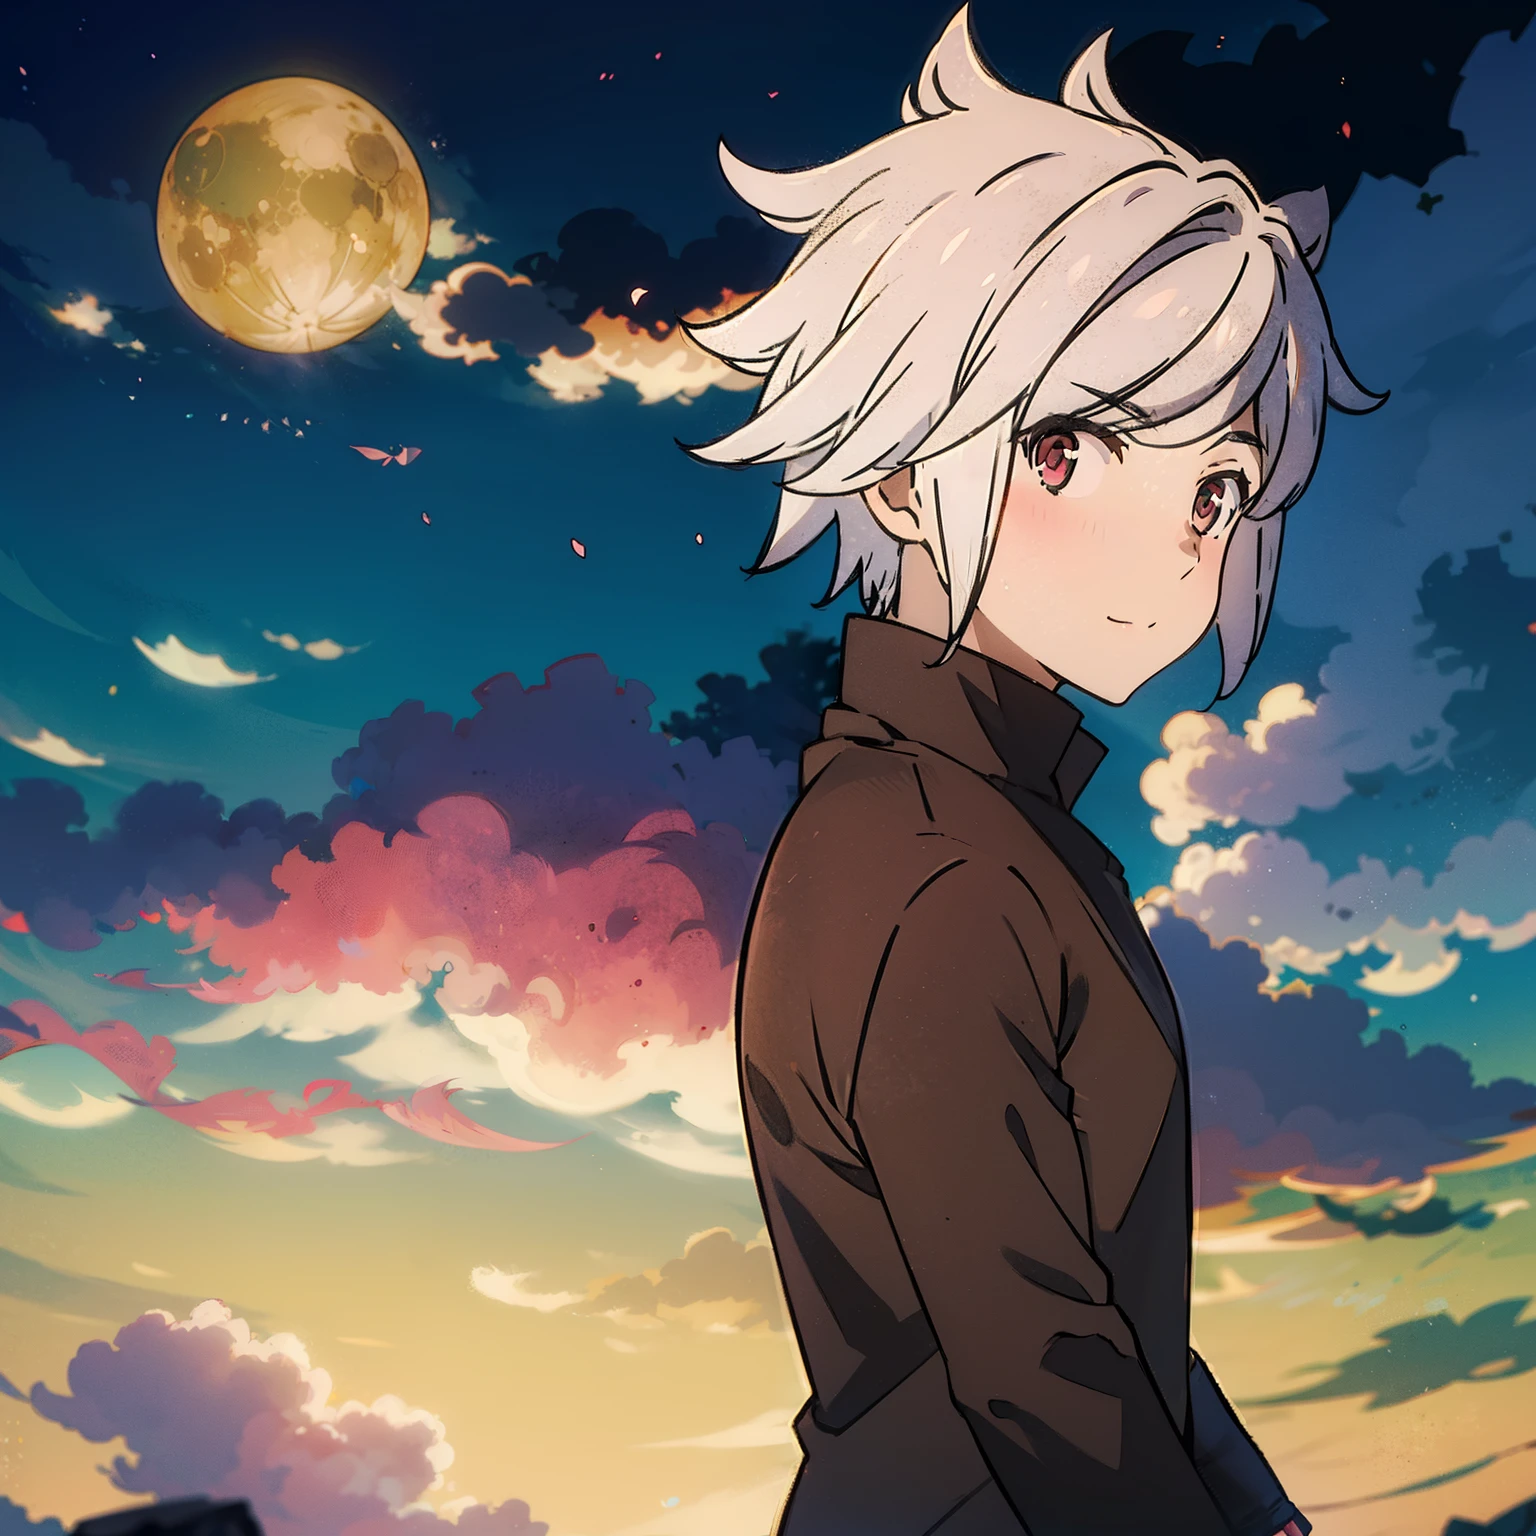 Anime-Junge, 1 Junge, weißes Haar, rote Augen, machen, Nachthintergrund, Zauberstab, schwere Rüstung